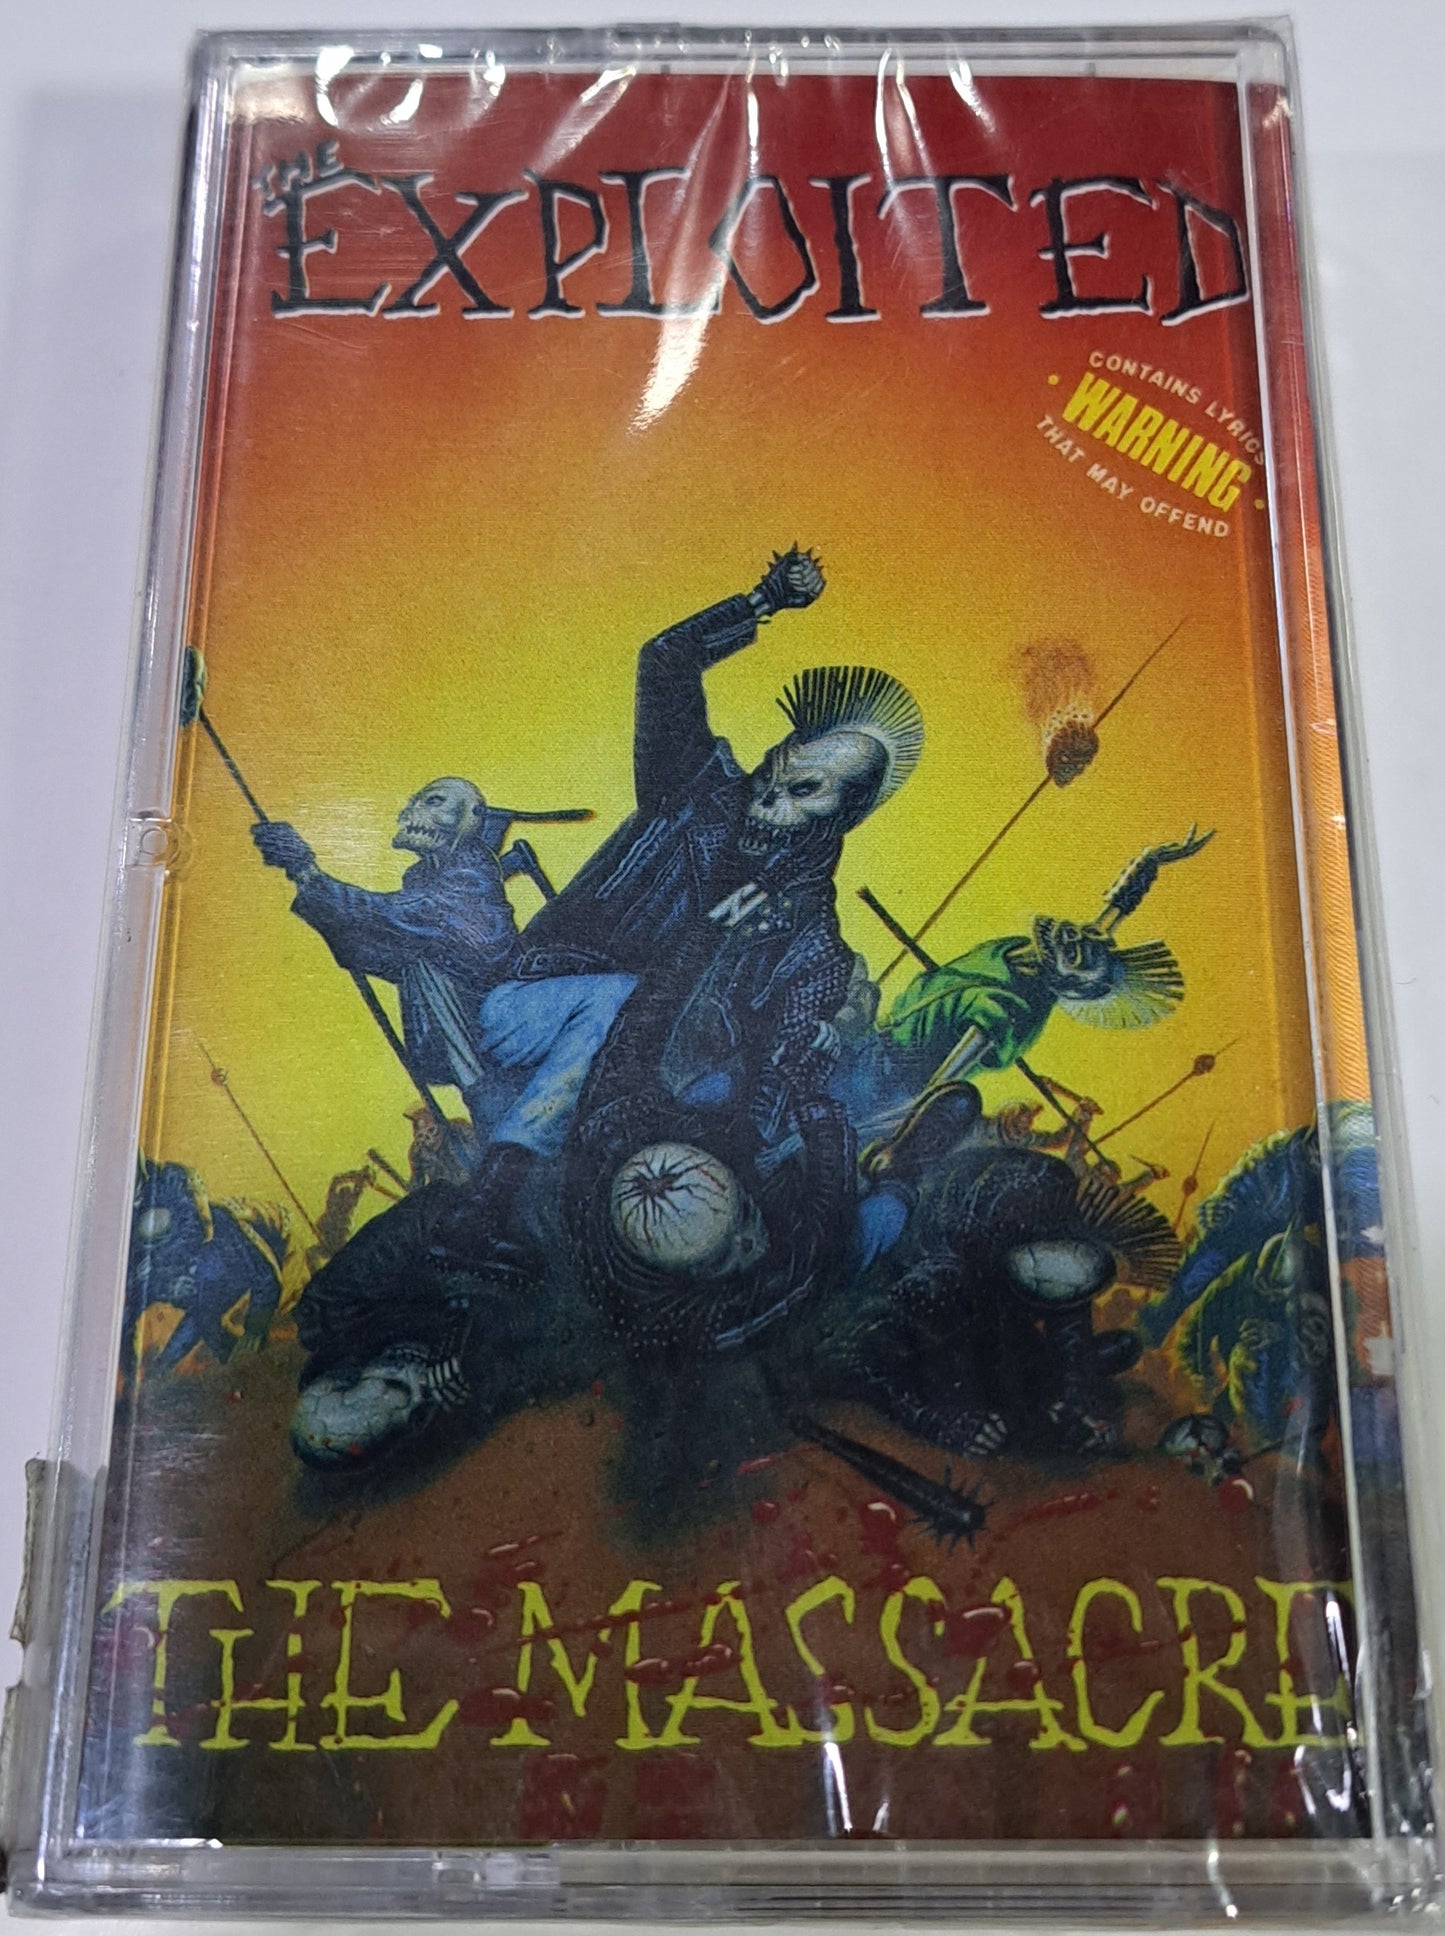 THE EXPLOITED - THE MASSACRE  CASSETTE